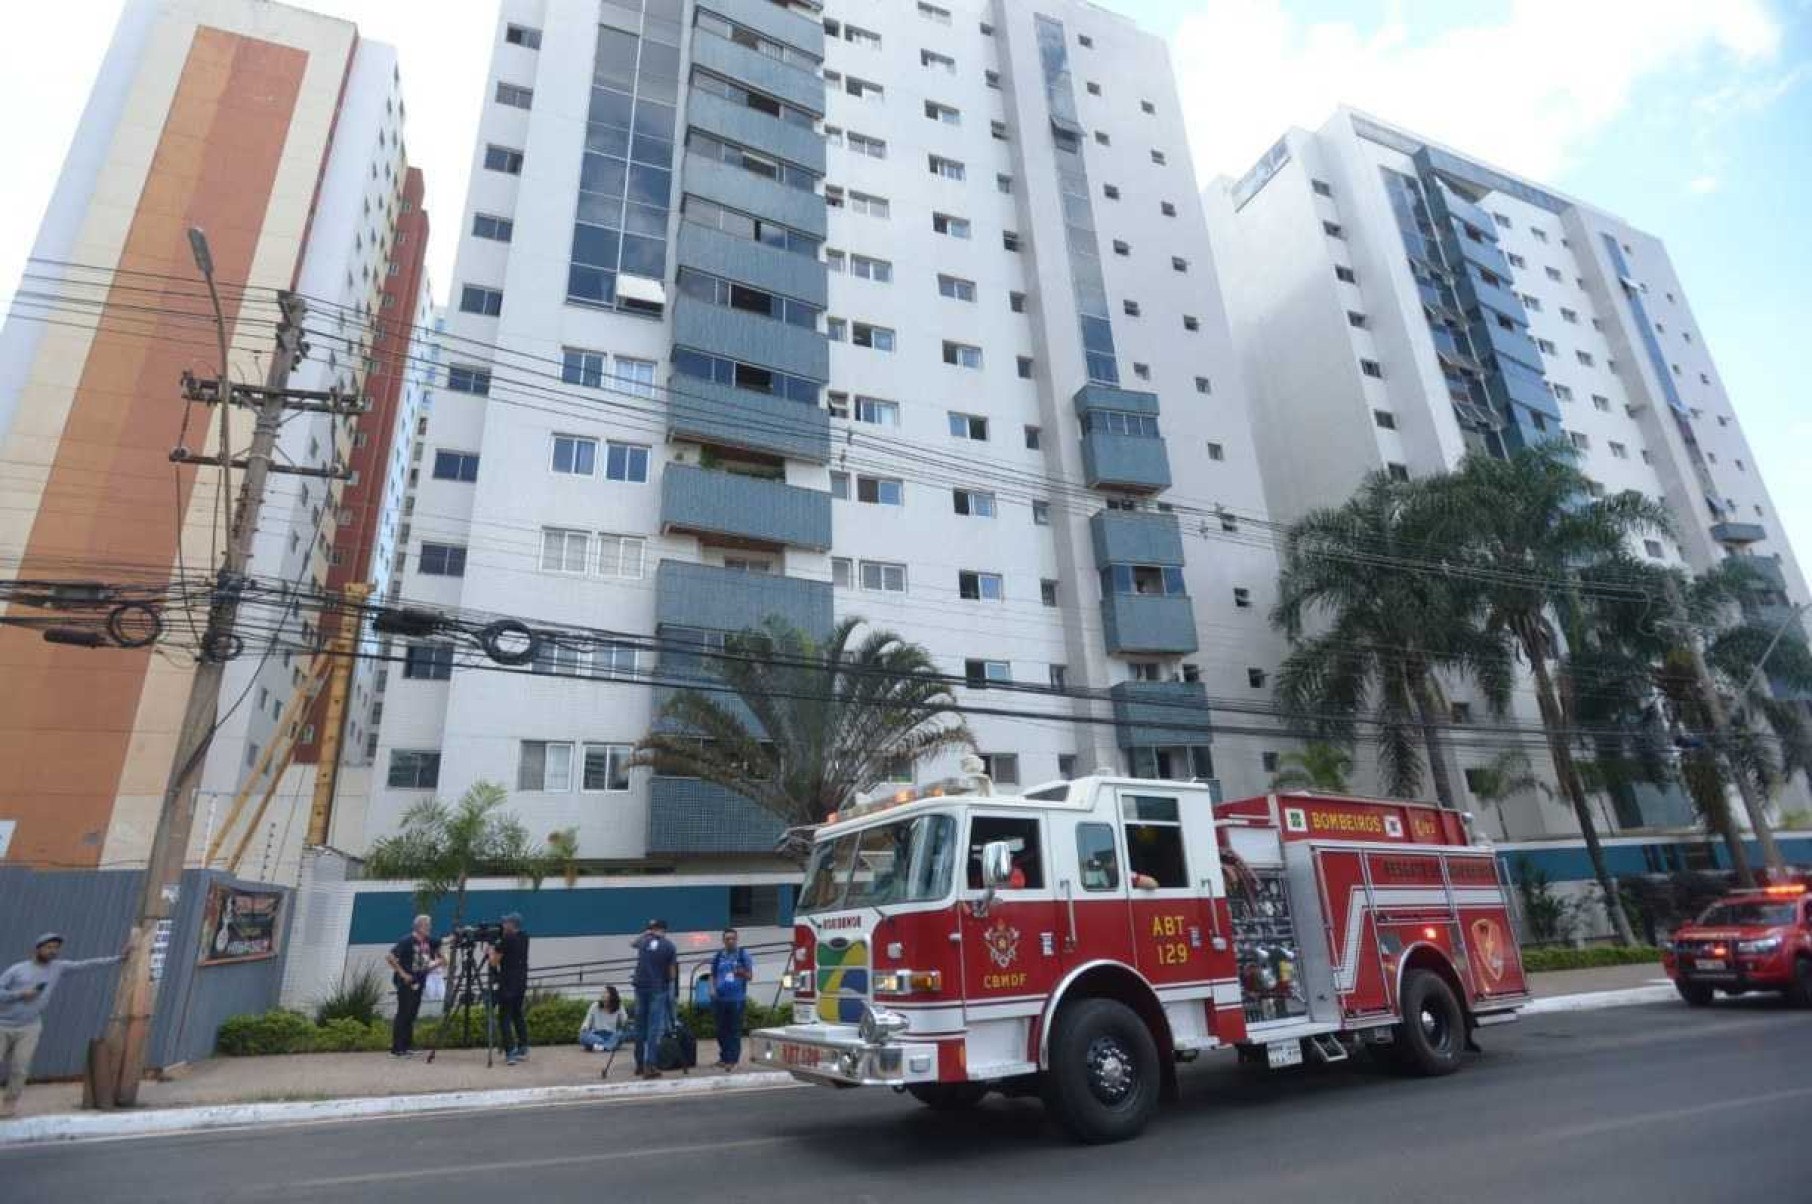 Vítima de incêndio era idosa e estava sozinha em casa, diz bombeiro